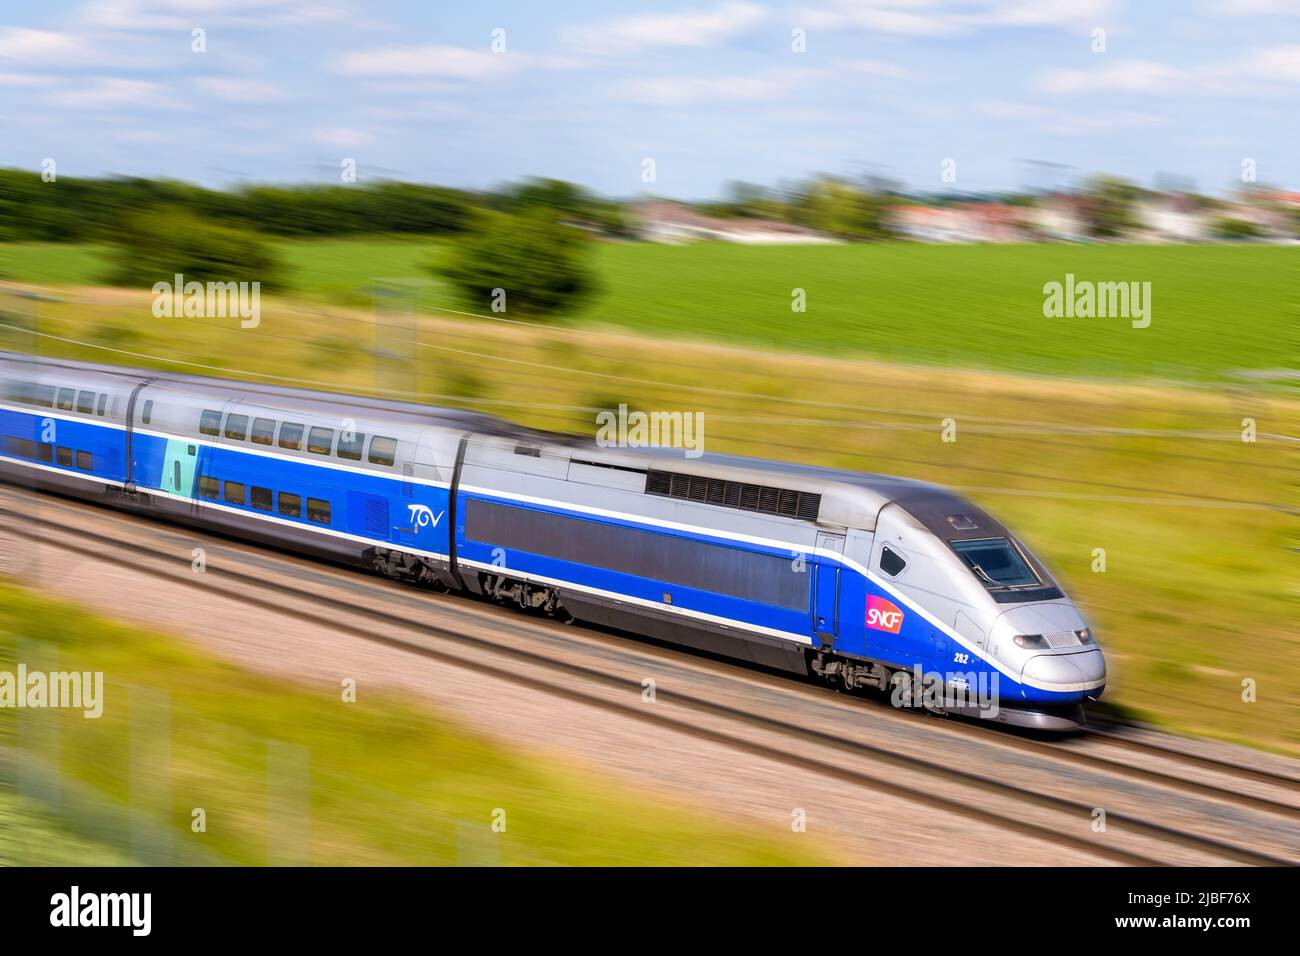 Un tren TGV Duplex de alta velocidad de la compañía francesa de trenes SNCF está conduciendo a toda velocidad en el campo. Foto de stock